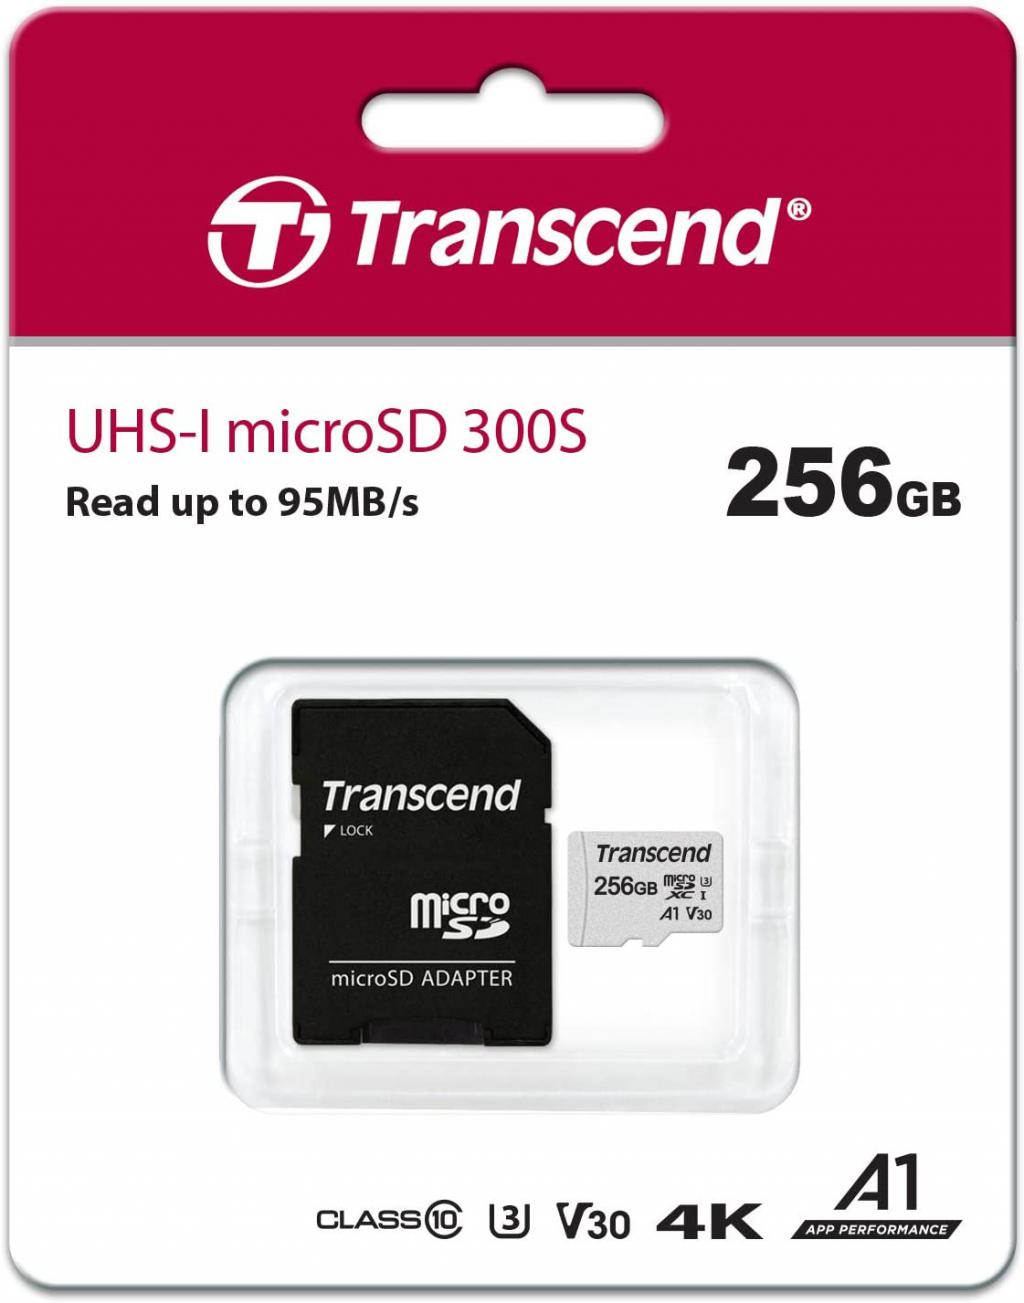 24,99 euros la carte mémoire microSDXC 256 Go de chez Transcend